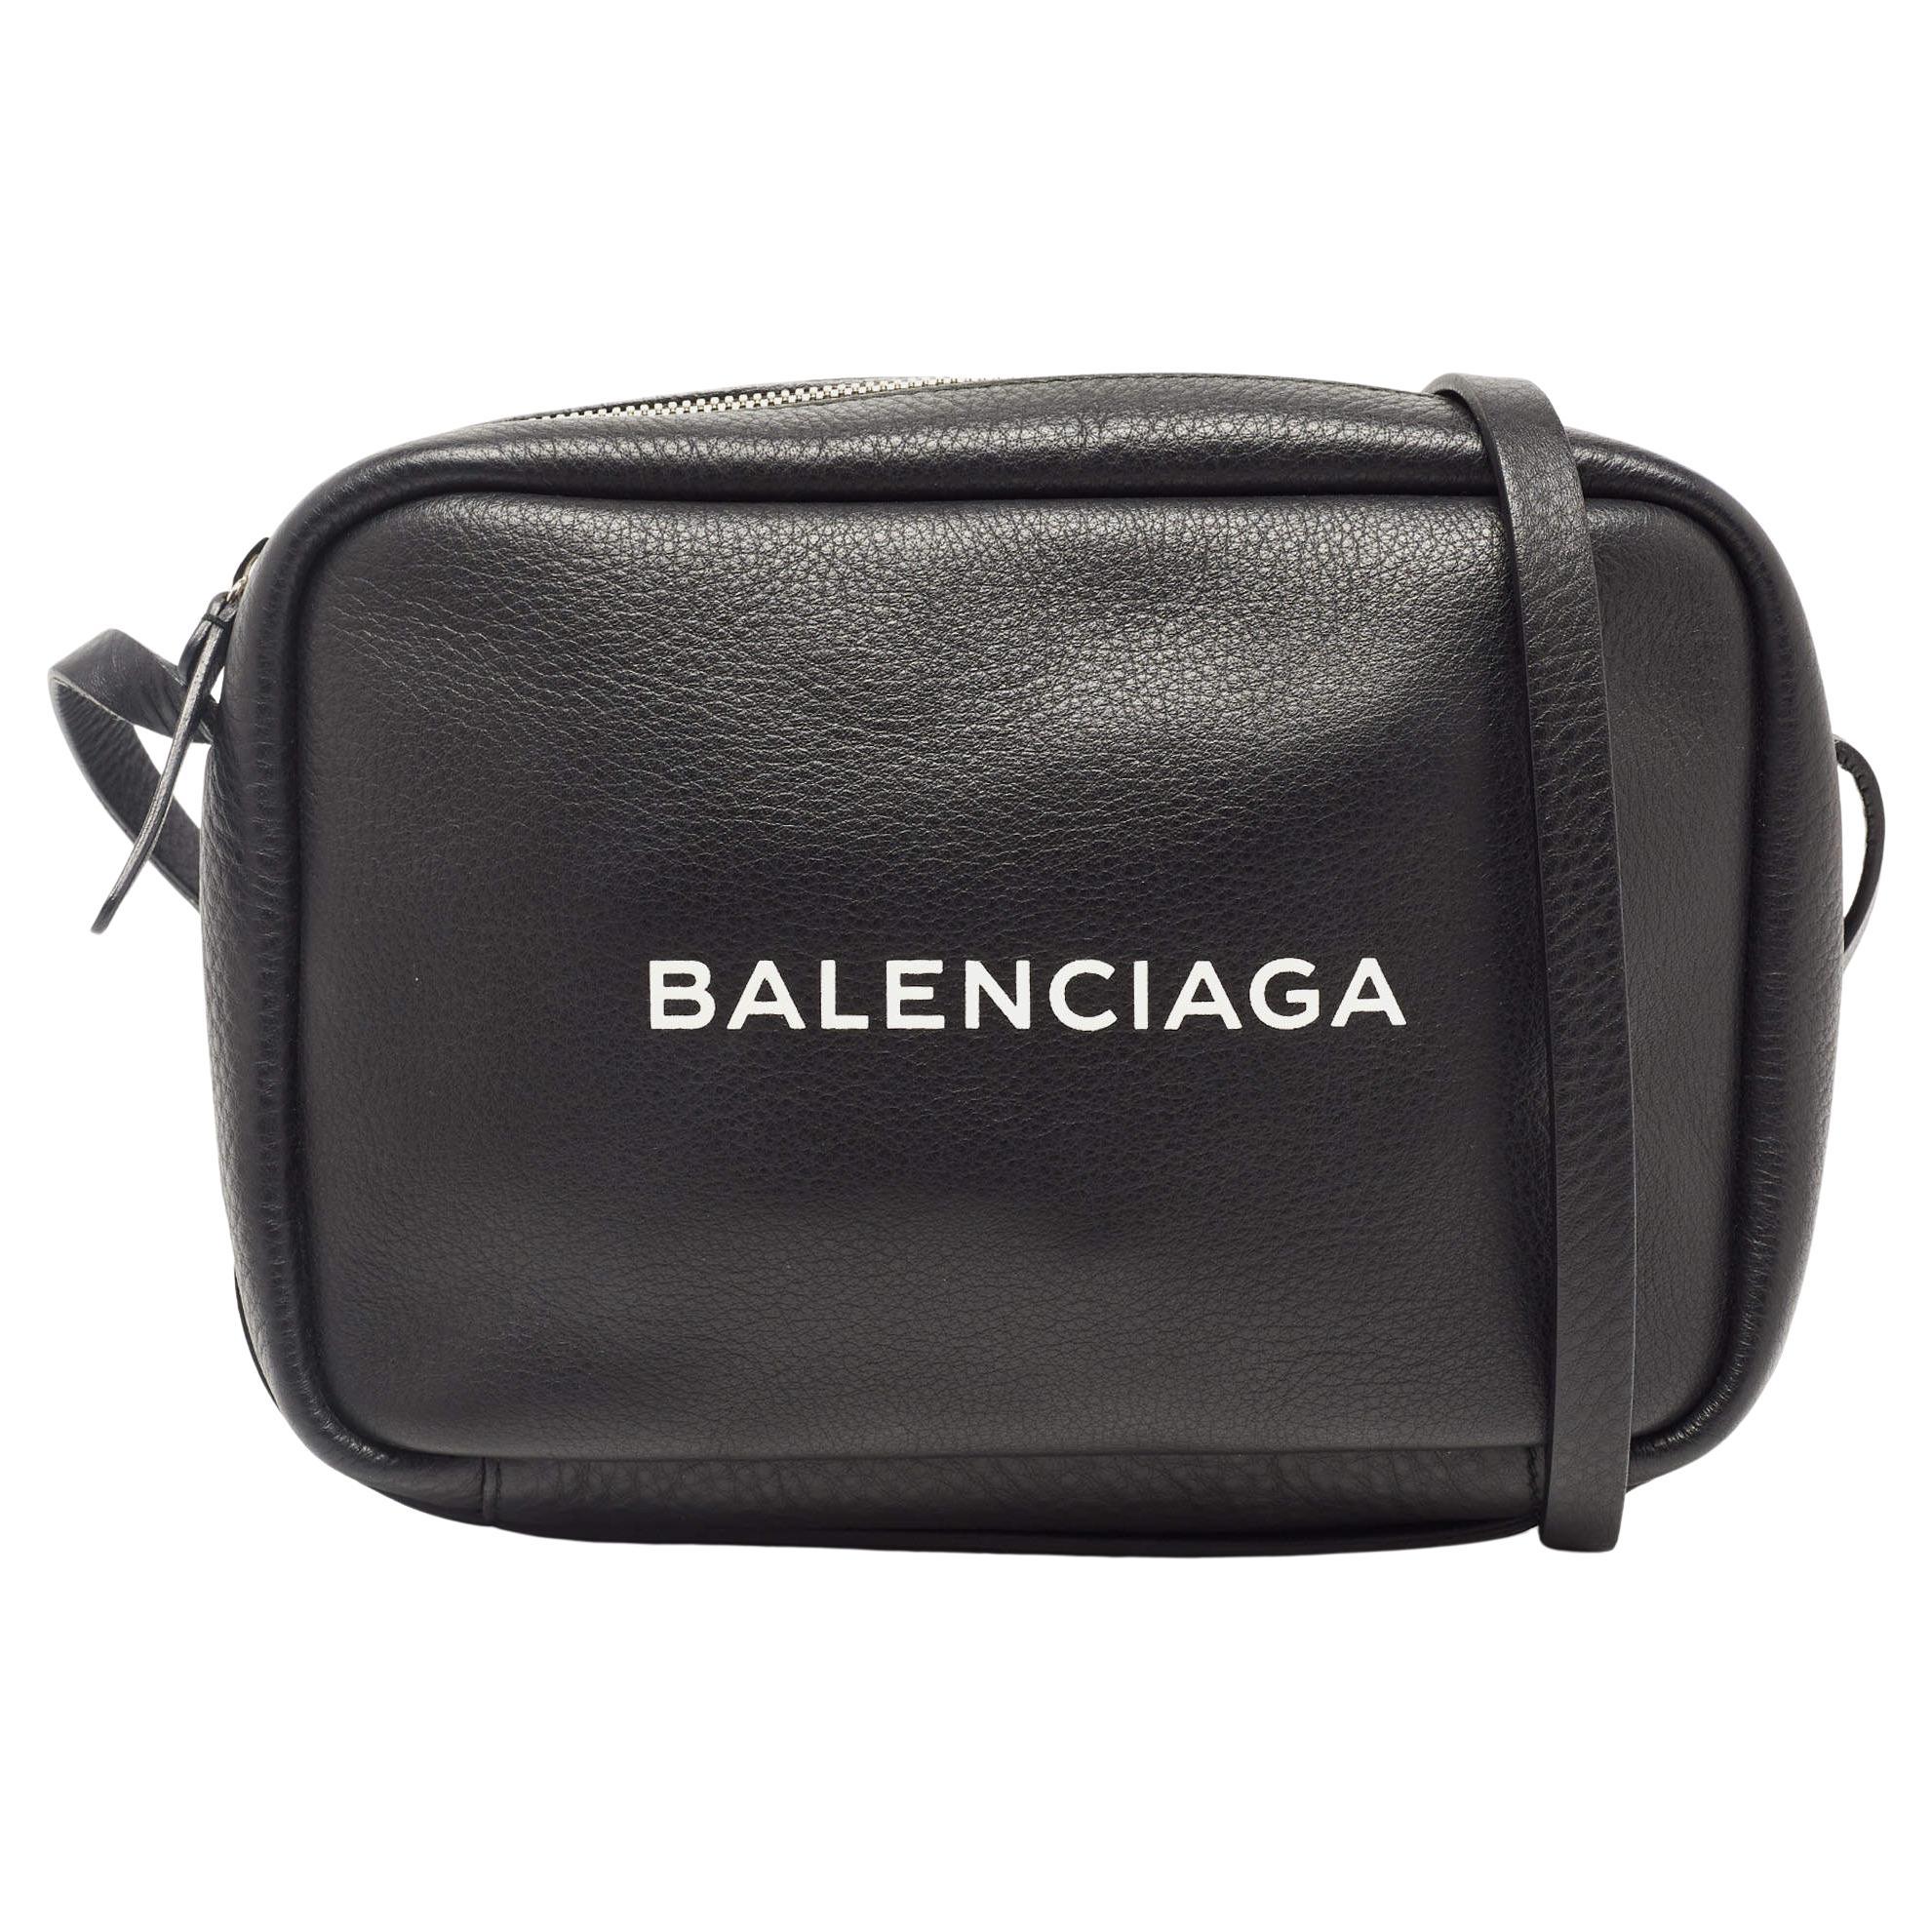 Billingham 5 Series 555 Shoulder Camera Bag - Sage / Tan Leather